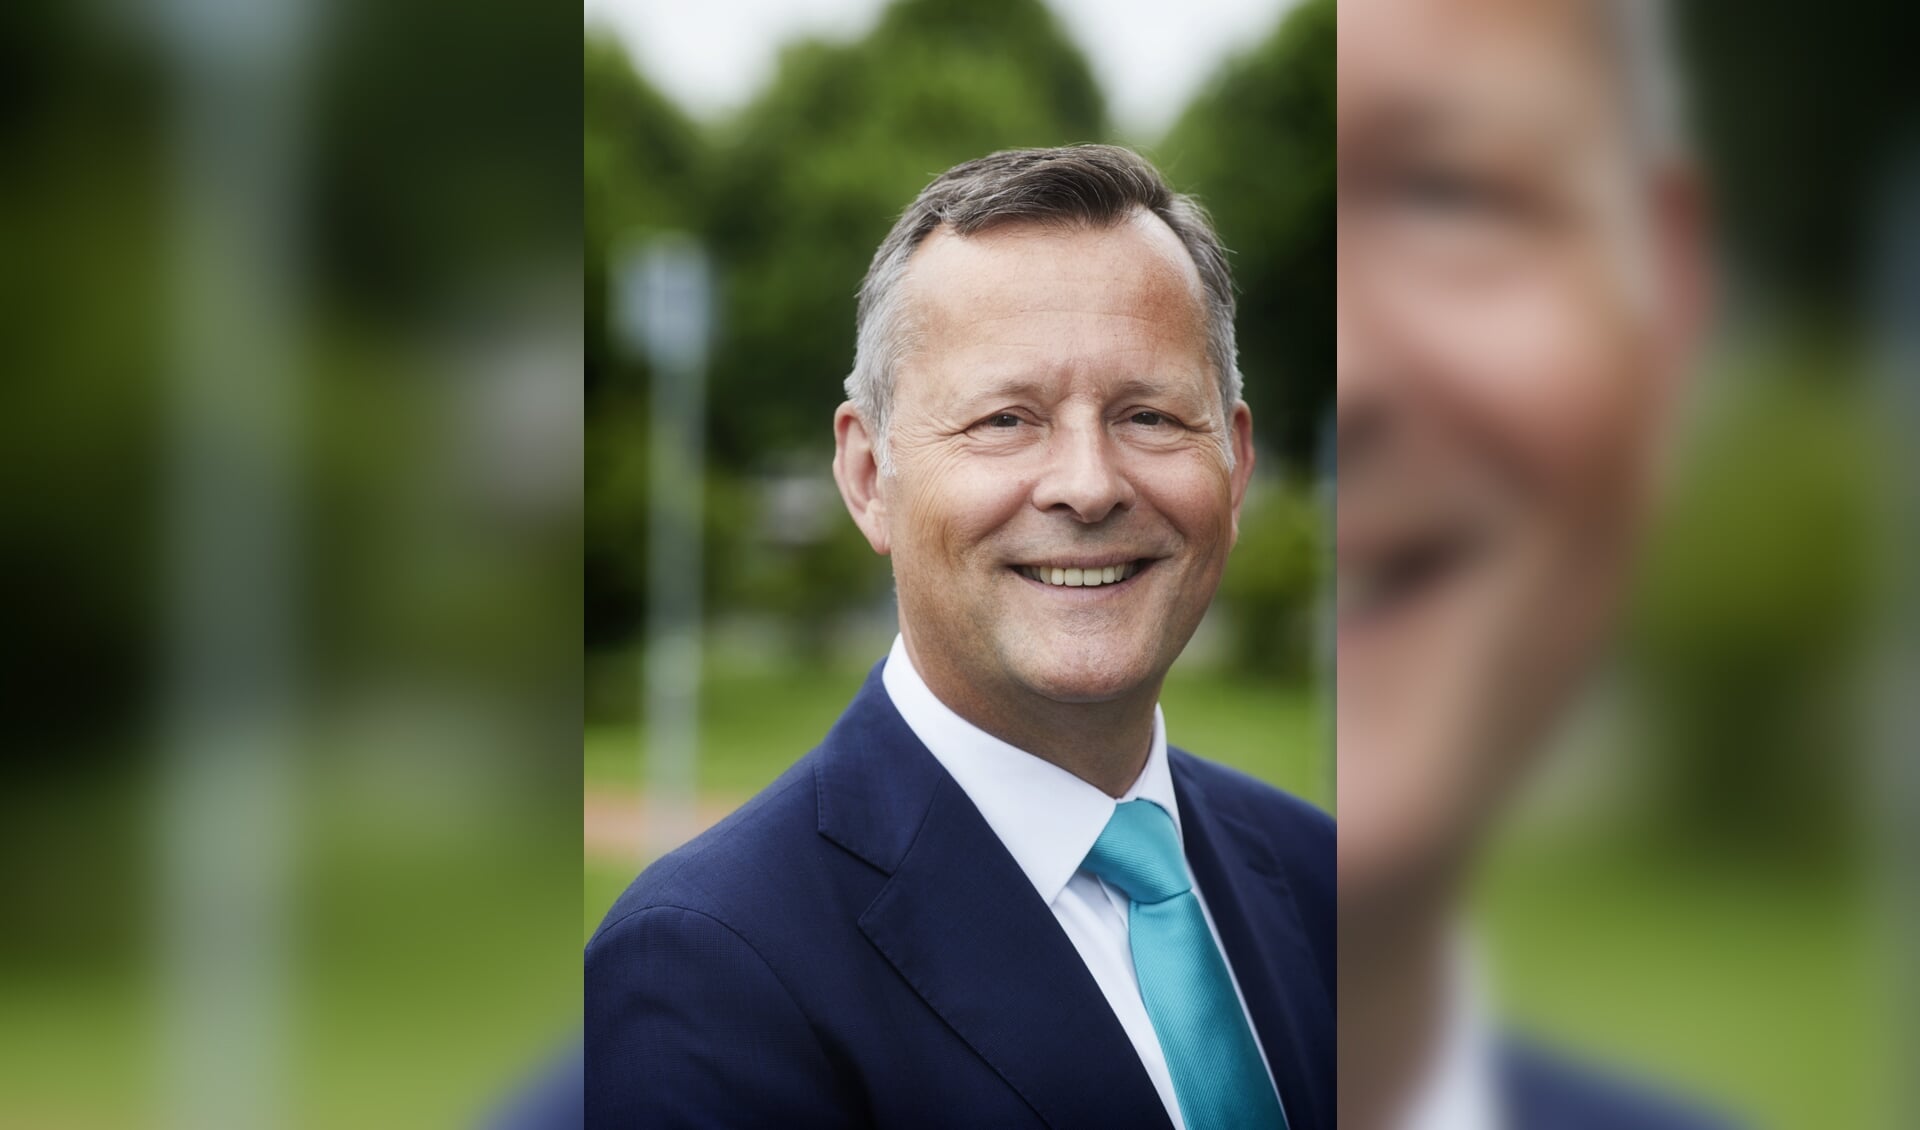 Arthur van Dijk is de nieuwe commissaris van de Koning in Noord-Holland.